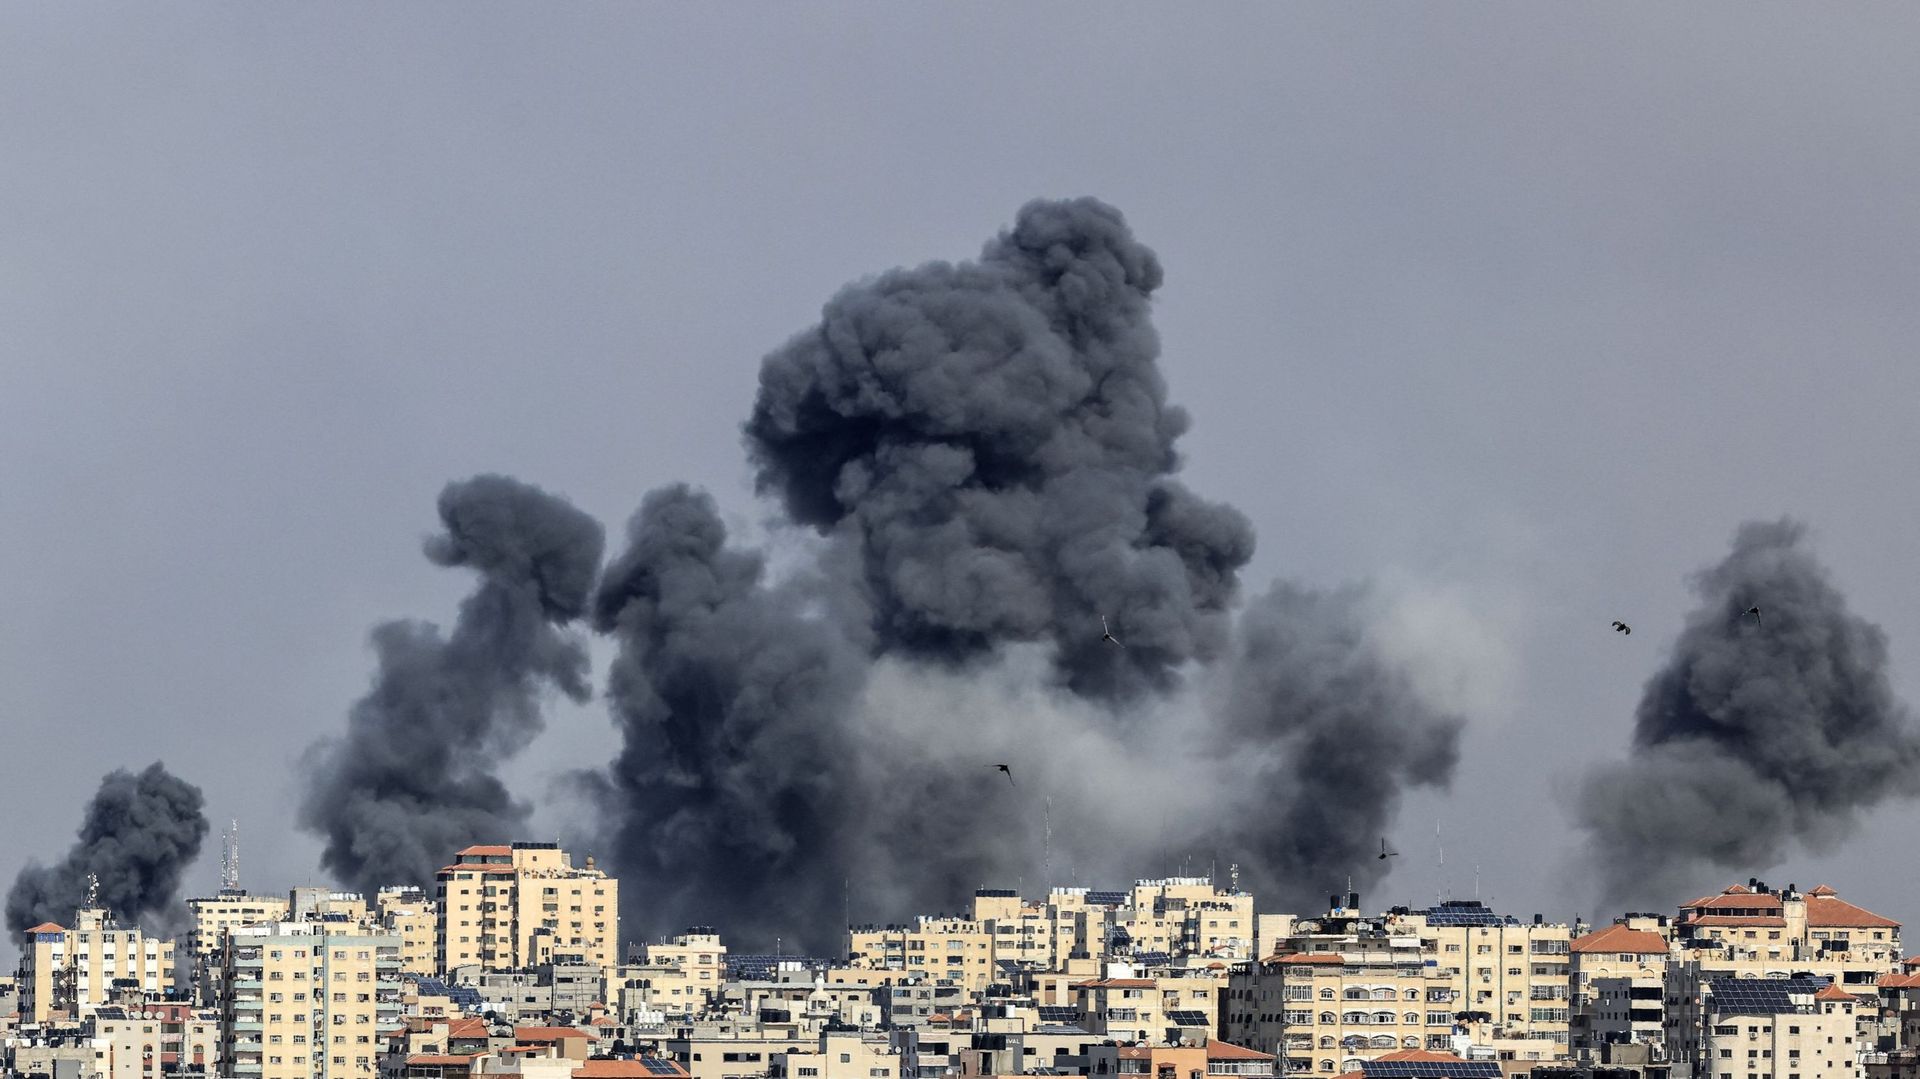 Guerra in Medio Oriente: l’attacco di Hamas arriva in un momento storico e simbolico